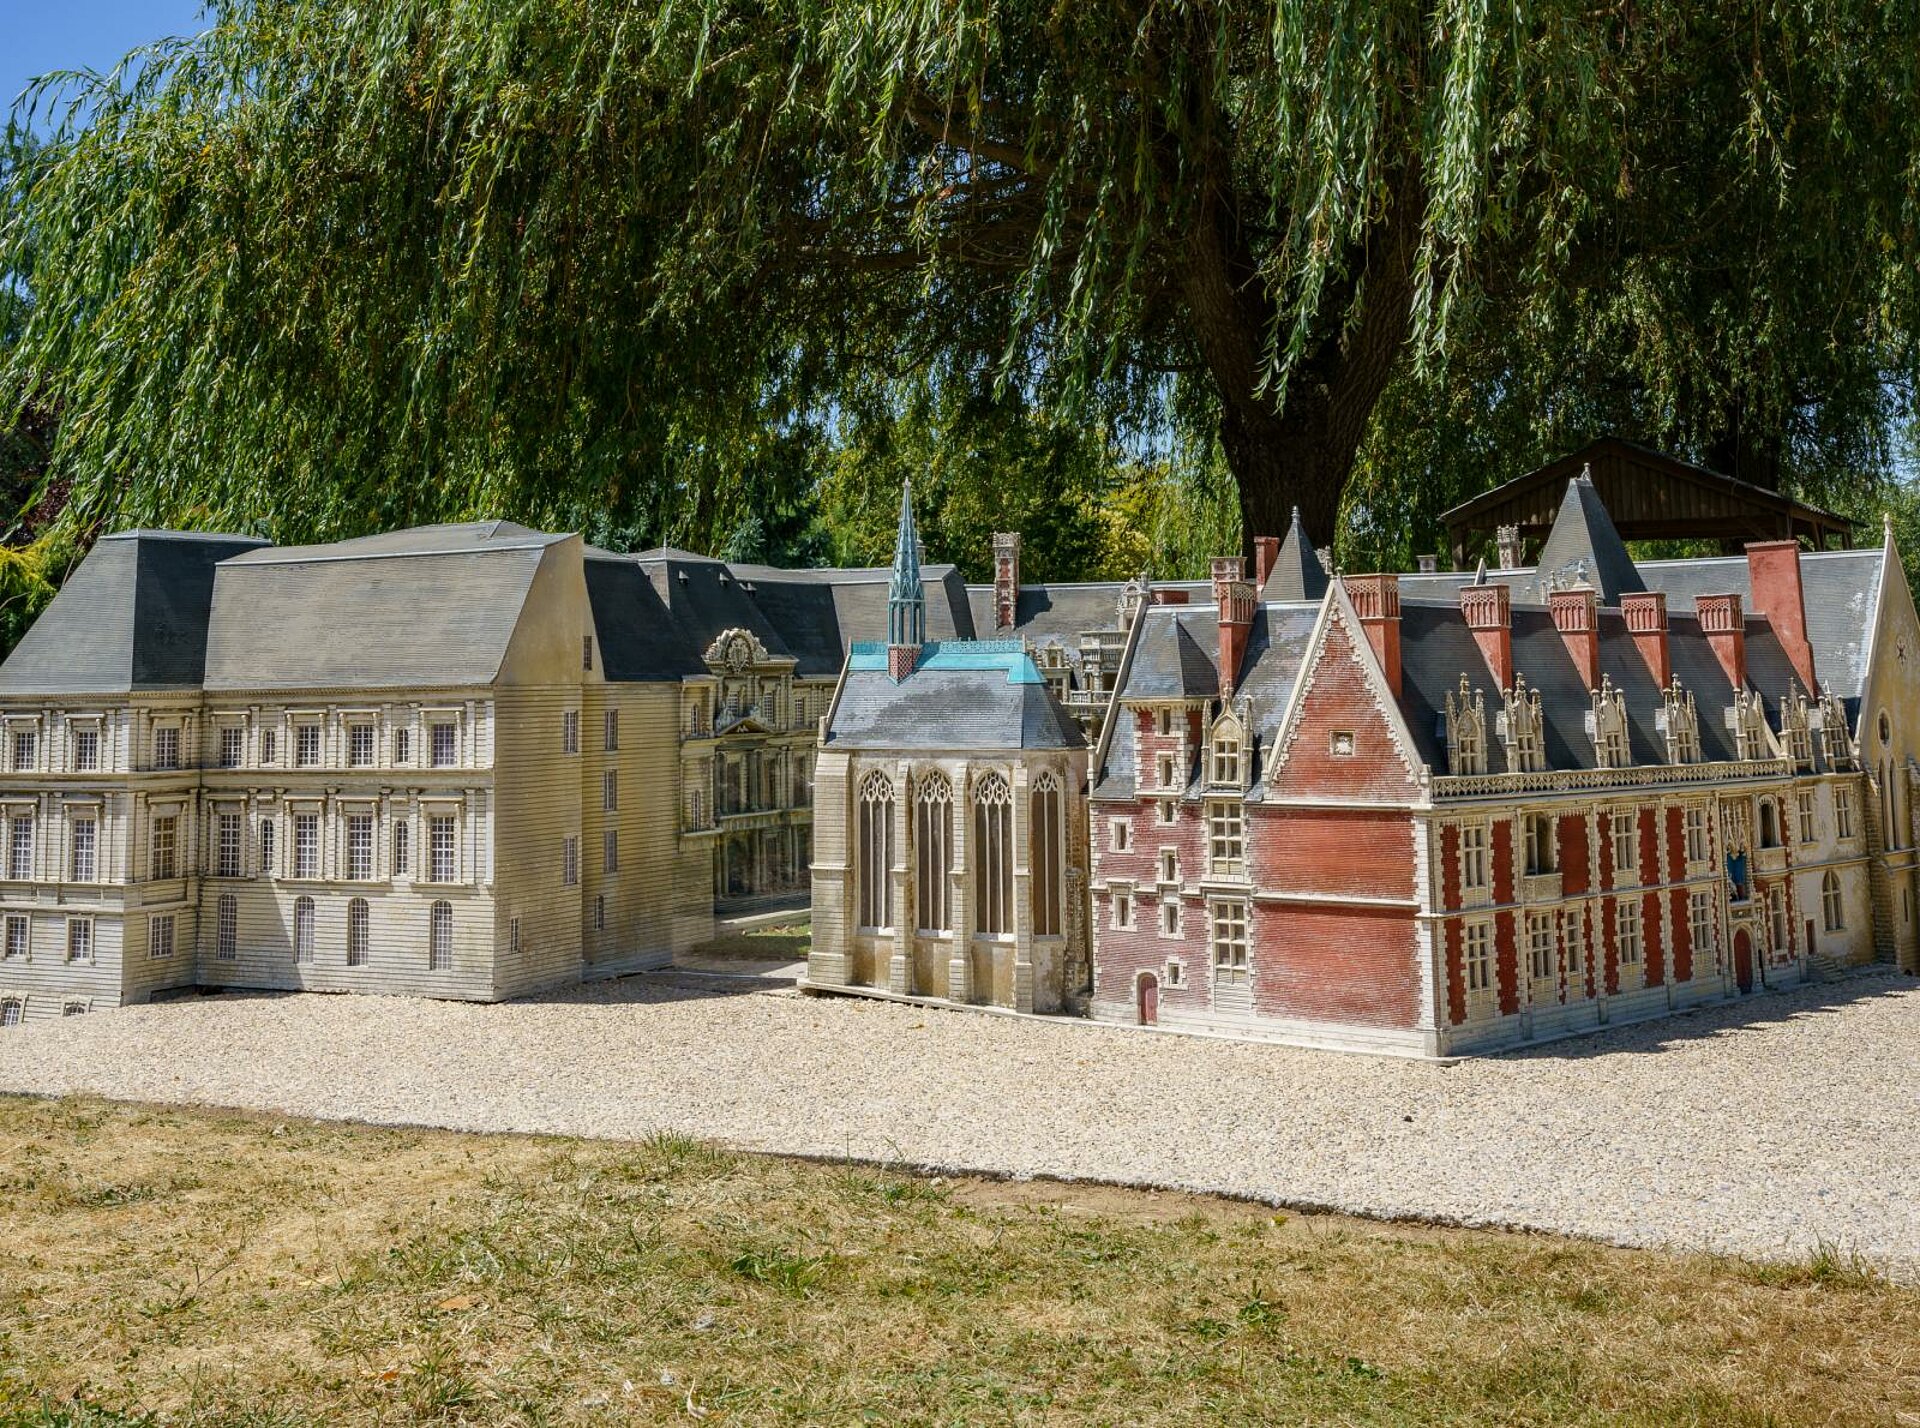 Château royale de Blois